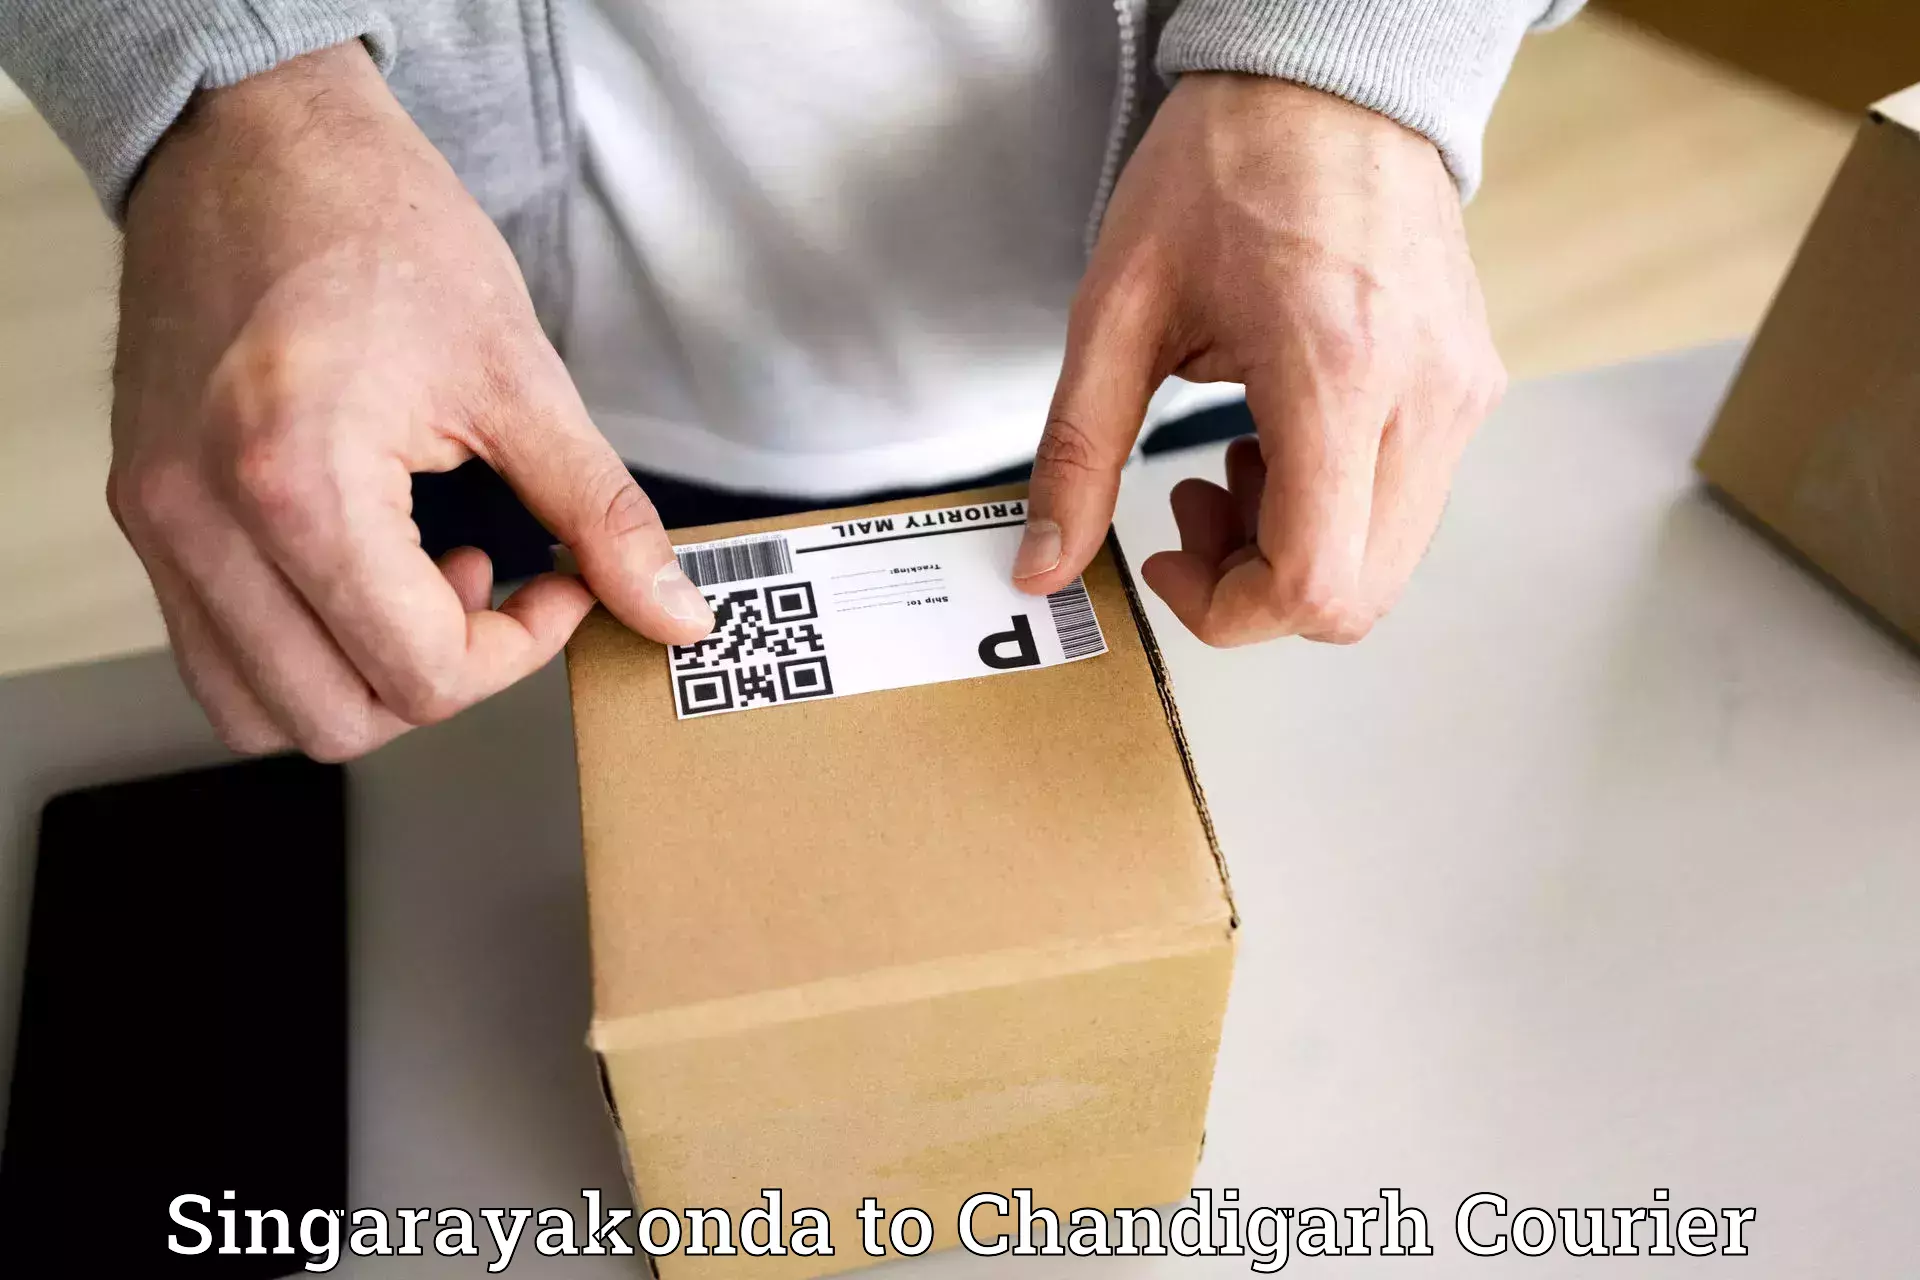 Reliable freight solutions Singarayakonda to Chandigarh